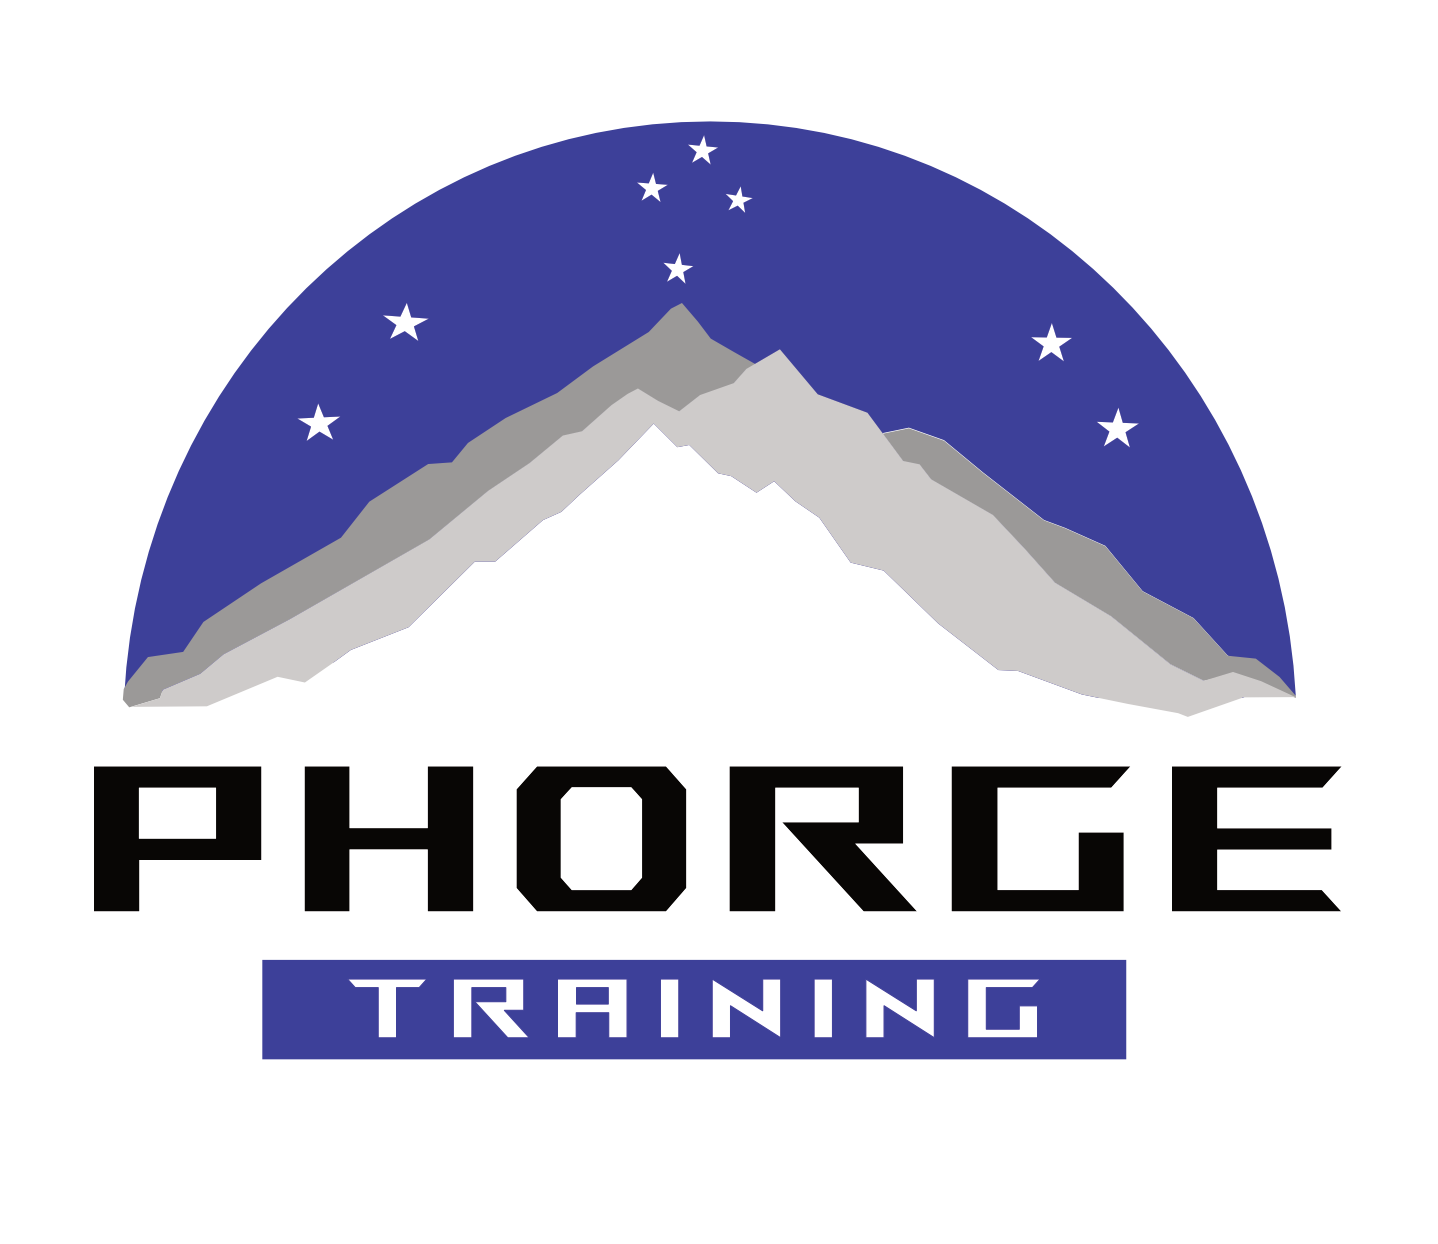 Phorge Training